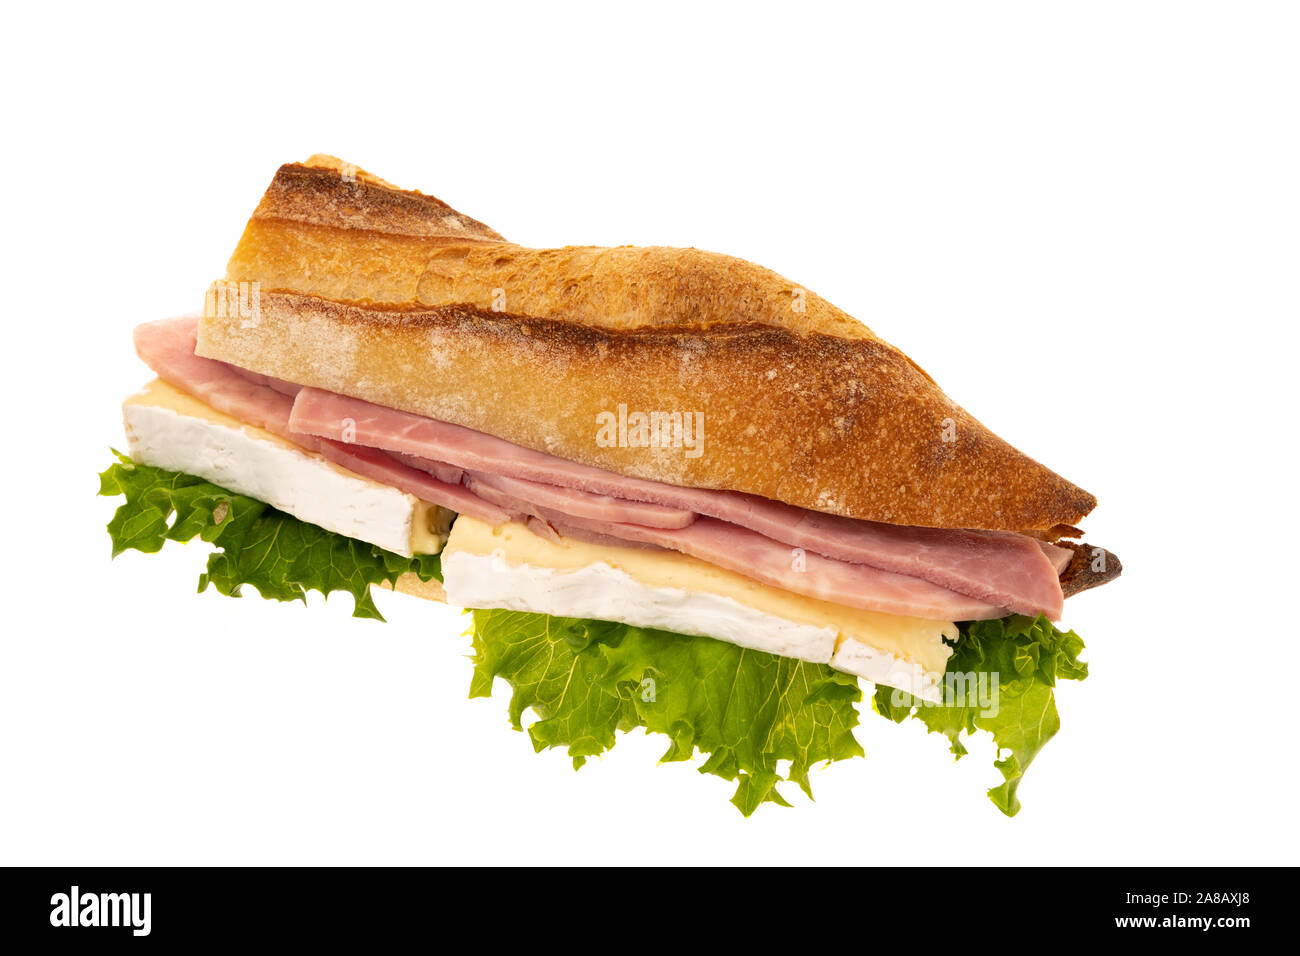 Le Camembert et le sandwich au jambon au pain croustillant - Fond blanc Banque D'Images